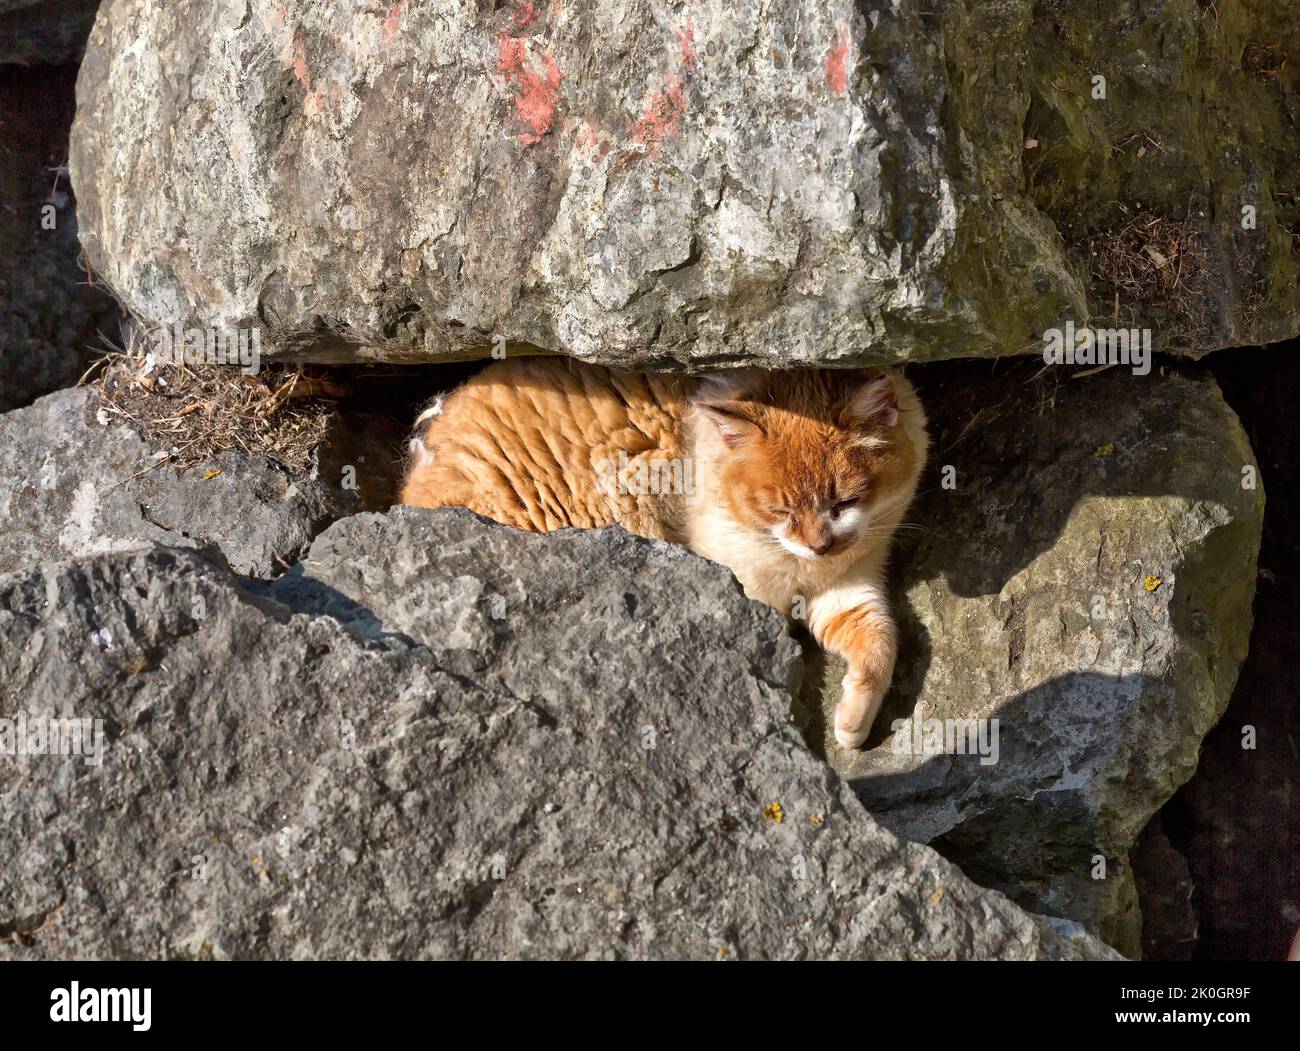 Abandonado, sin hogar, descuidado gato de la casa 'Felis catus' descansando a lo largo de rocas de refuerzo en el puerto, Costa Oeste de California. Foto de stock